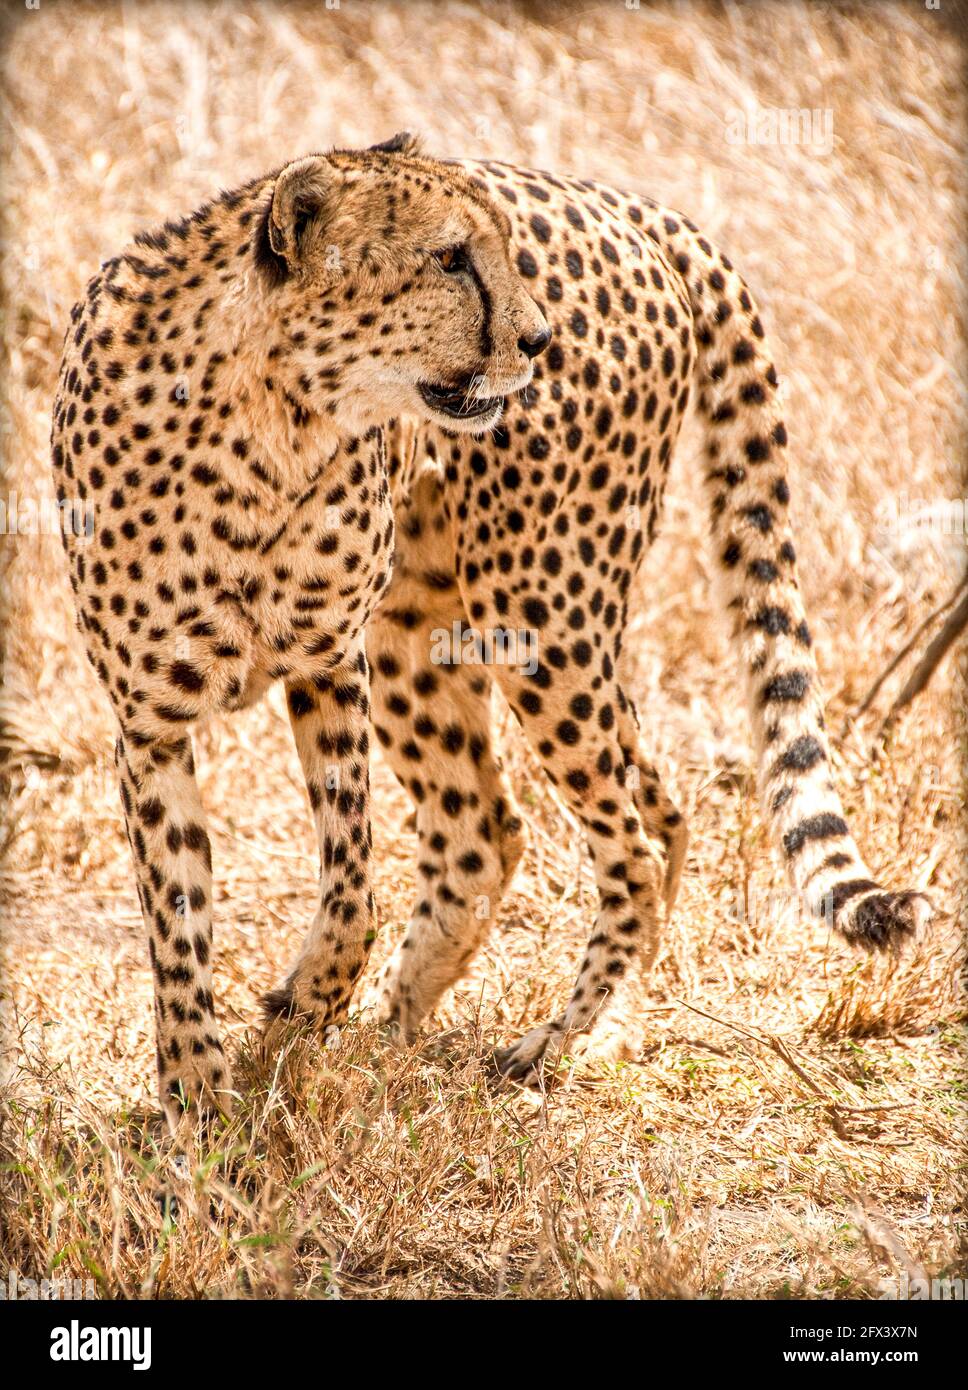 standing cheetah Stock Photo